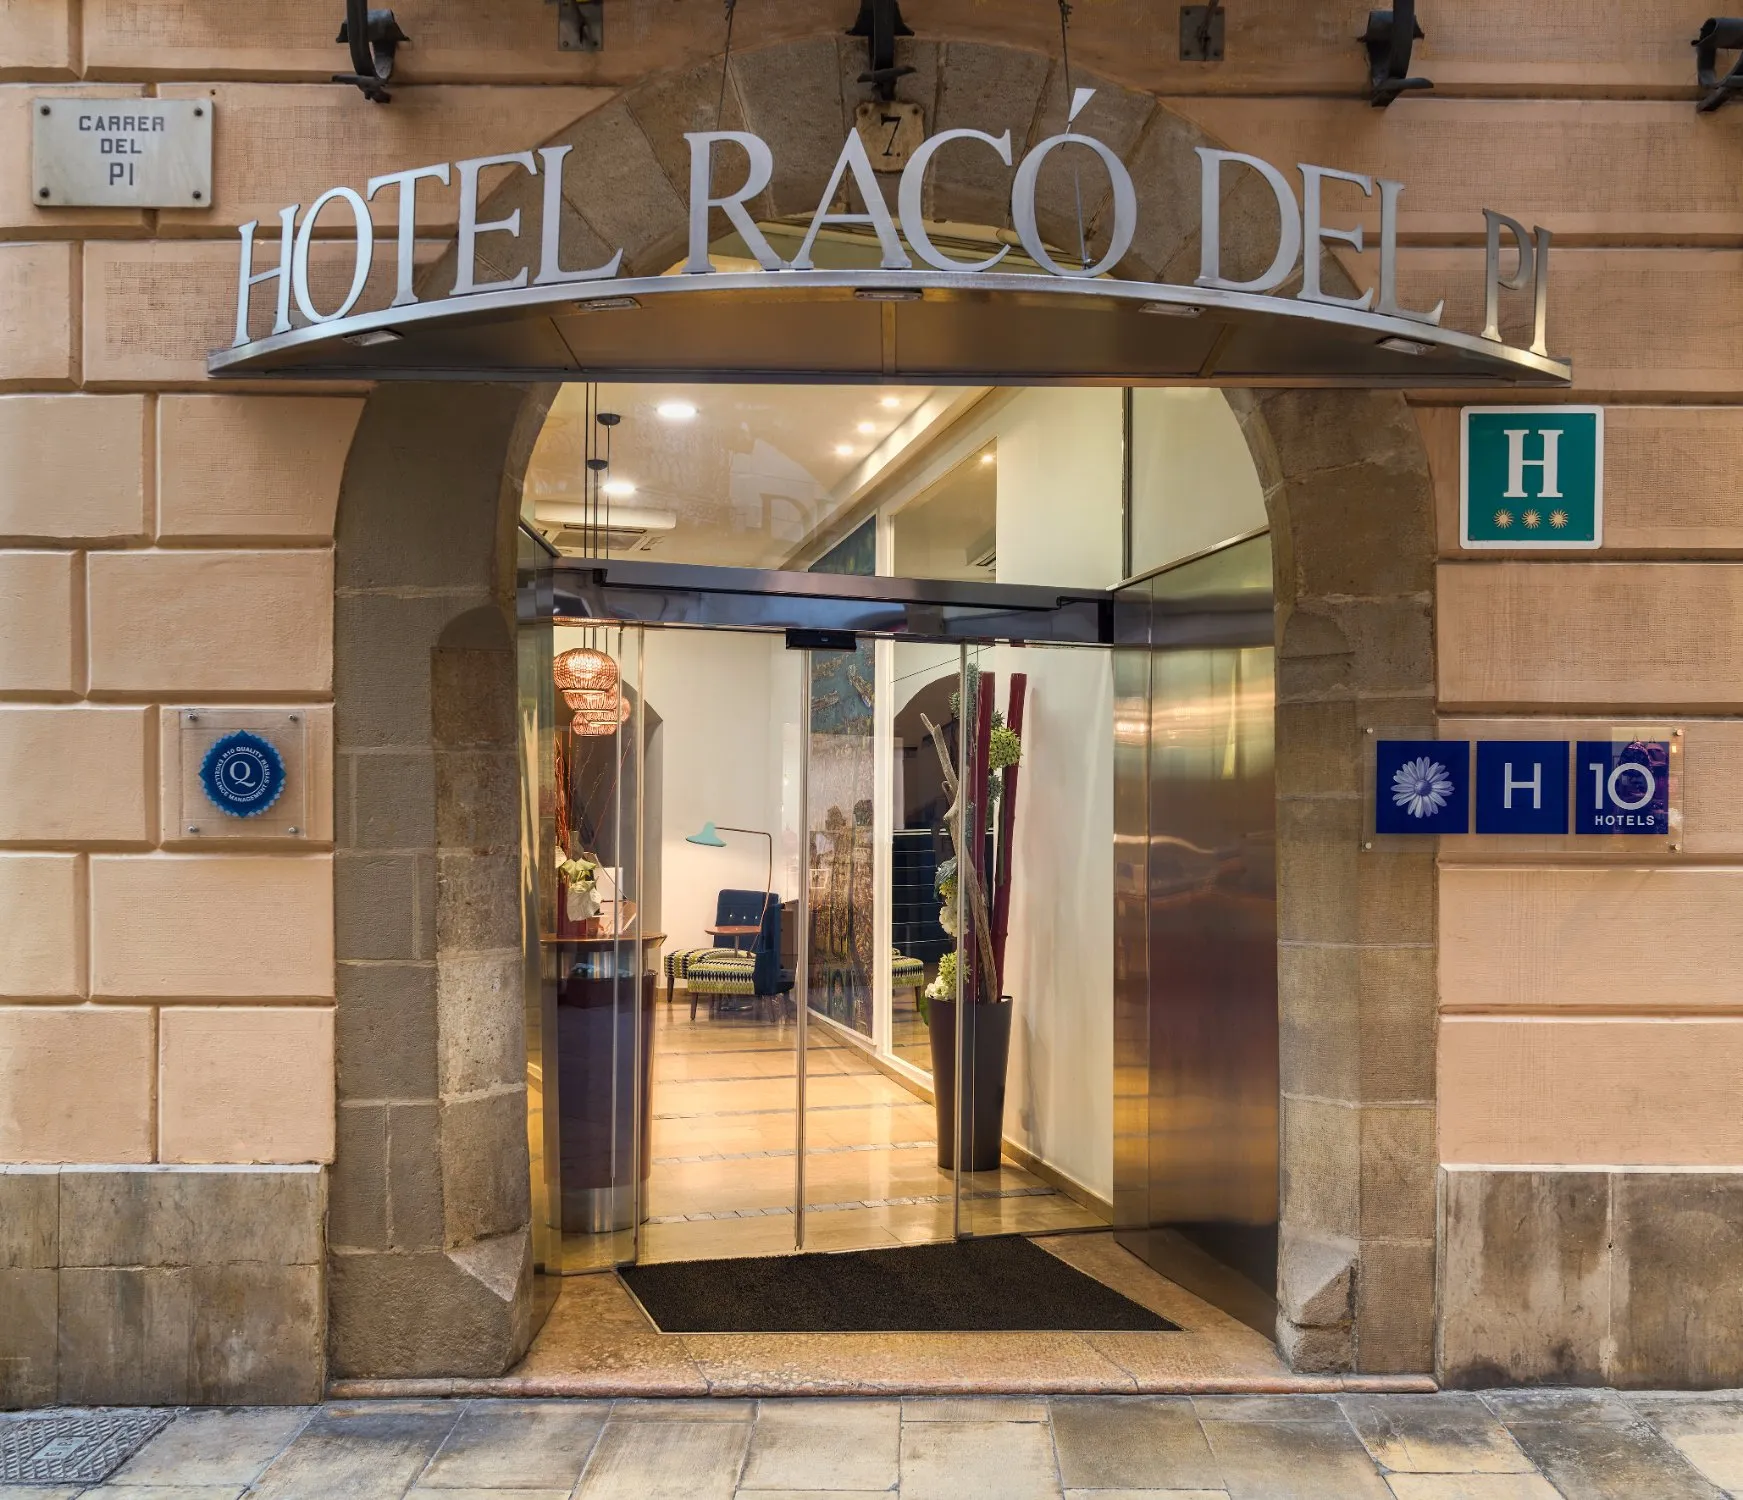 Building hotel H10 Raco del Pi